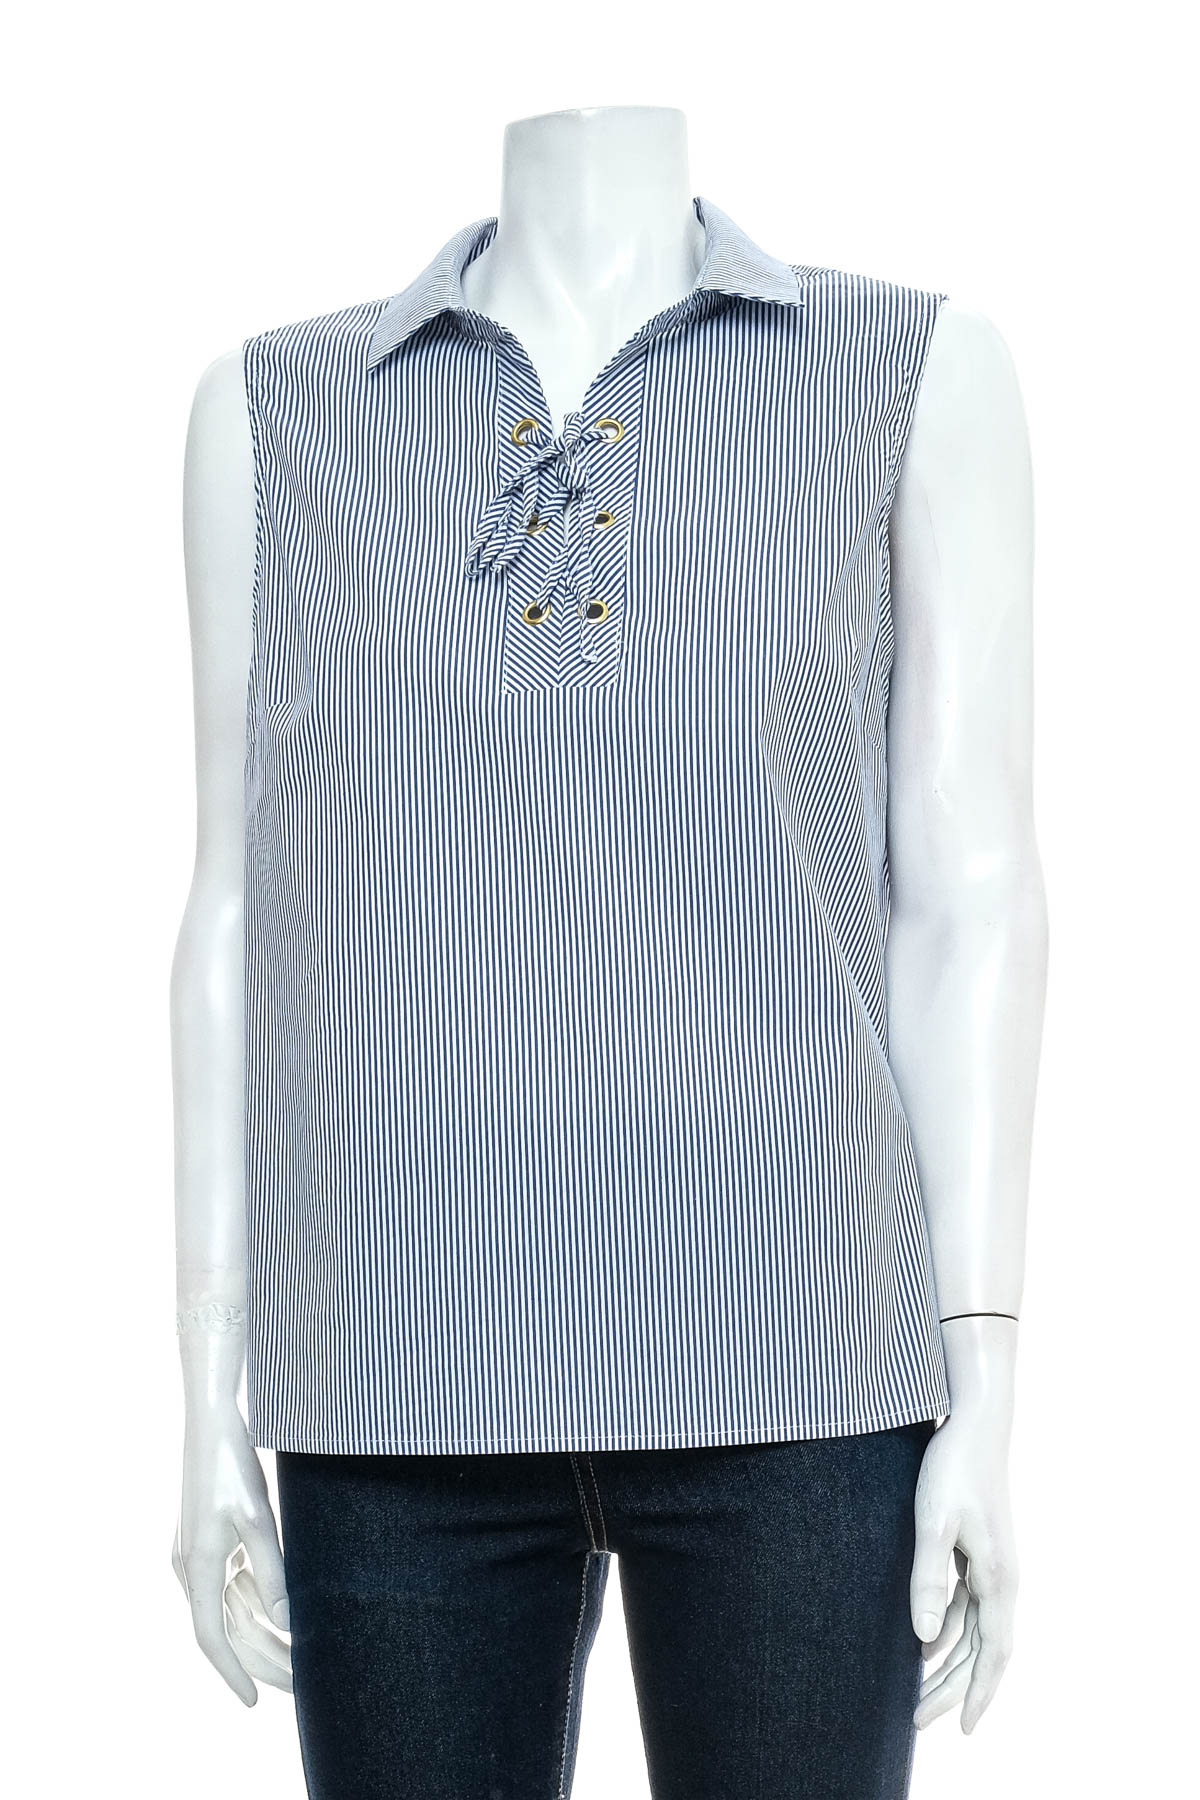 Γυναικείо πουκάμισο - CACHE CACHE - 0